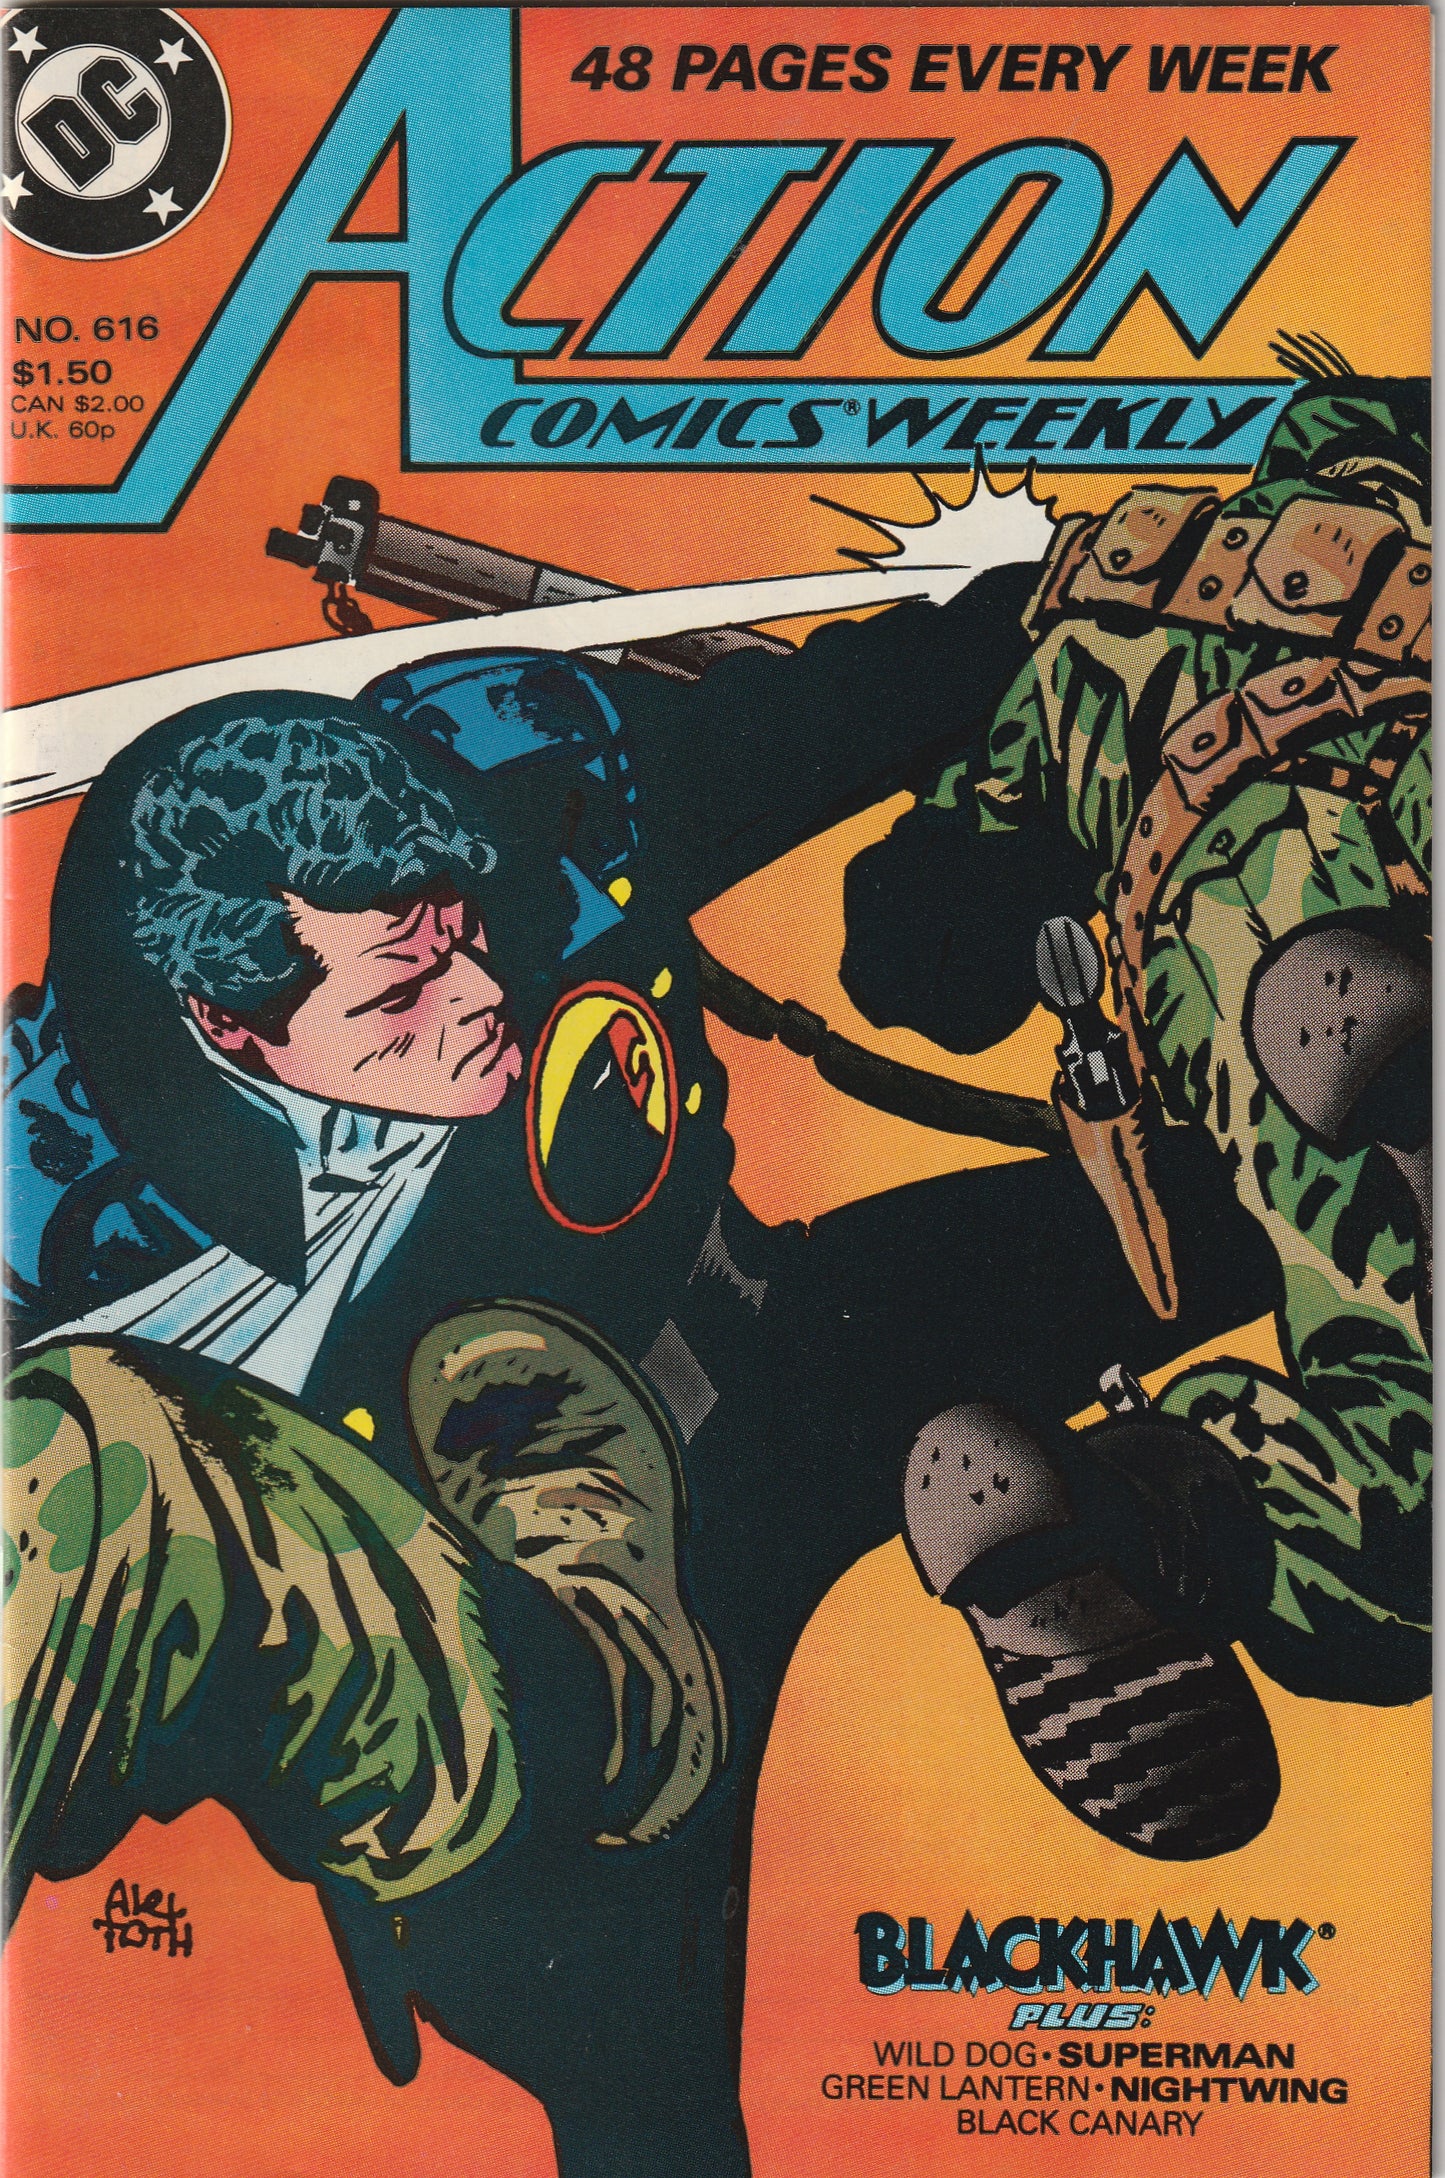 Action Comics #616 (1988) - Alex Toth cover